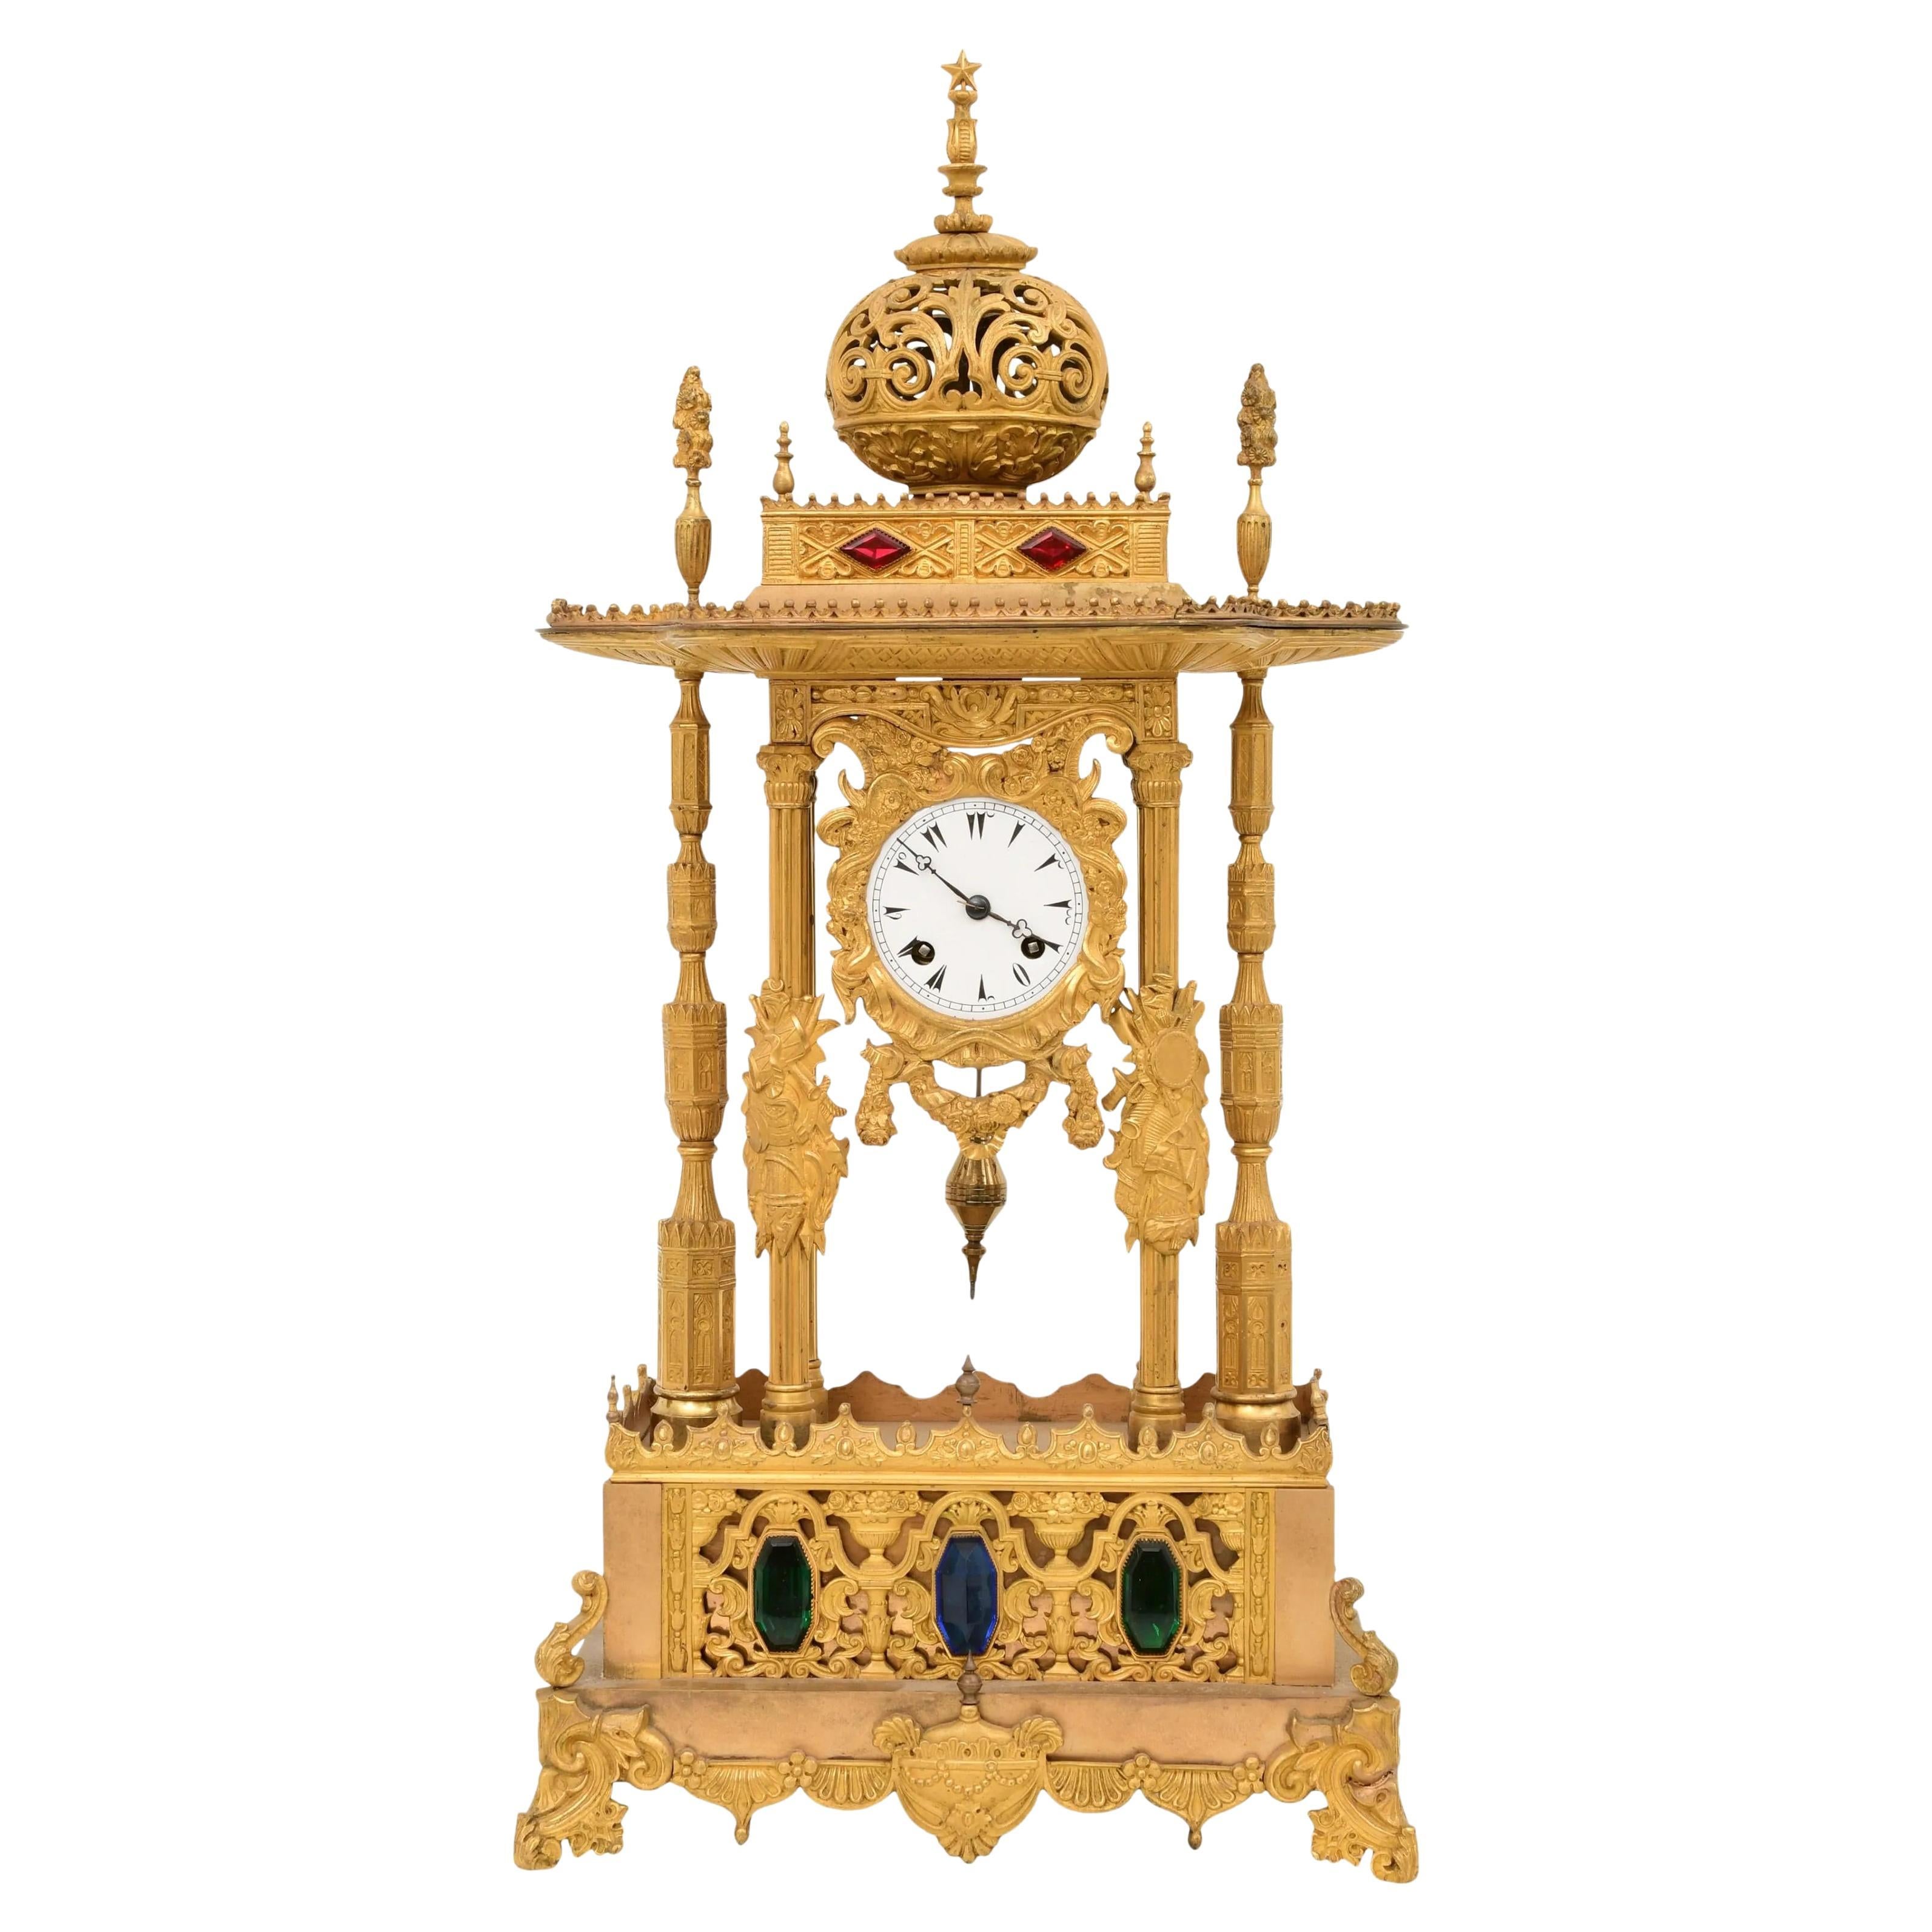 Eine ungewöhnliche französische Louis-Philippe-Uhr mit Ormolu und Juwelen, die für den osmanisch-türkischen Markt hergestellt wurde, um 1840.

Das verschnörkelte Gehäuse, an dem ein Blumenband hängt, wird von kannelierten Säulen flankiert, an